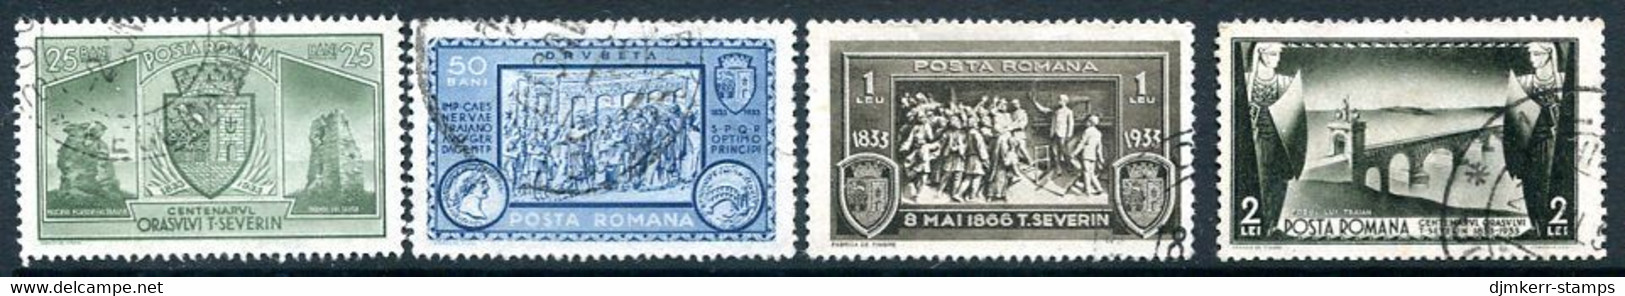 ROMANIA 1933 Centenary Of Severin Used.  Michel 458-61 - Usati